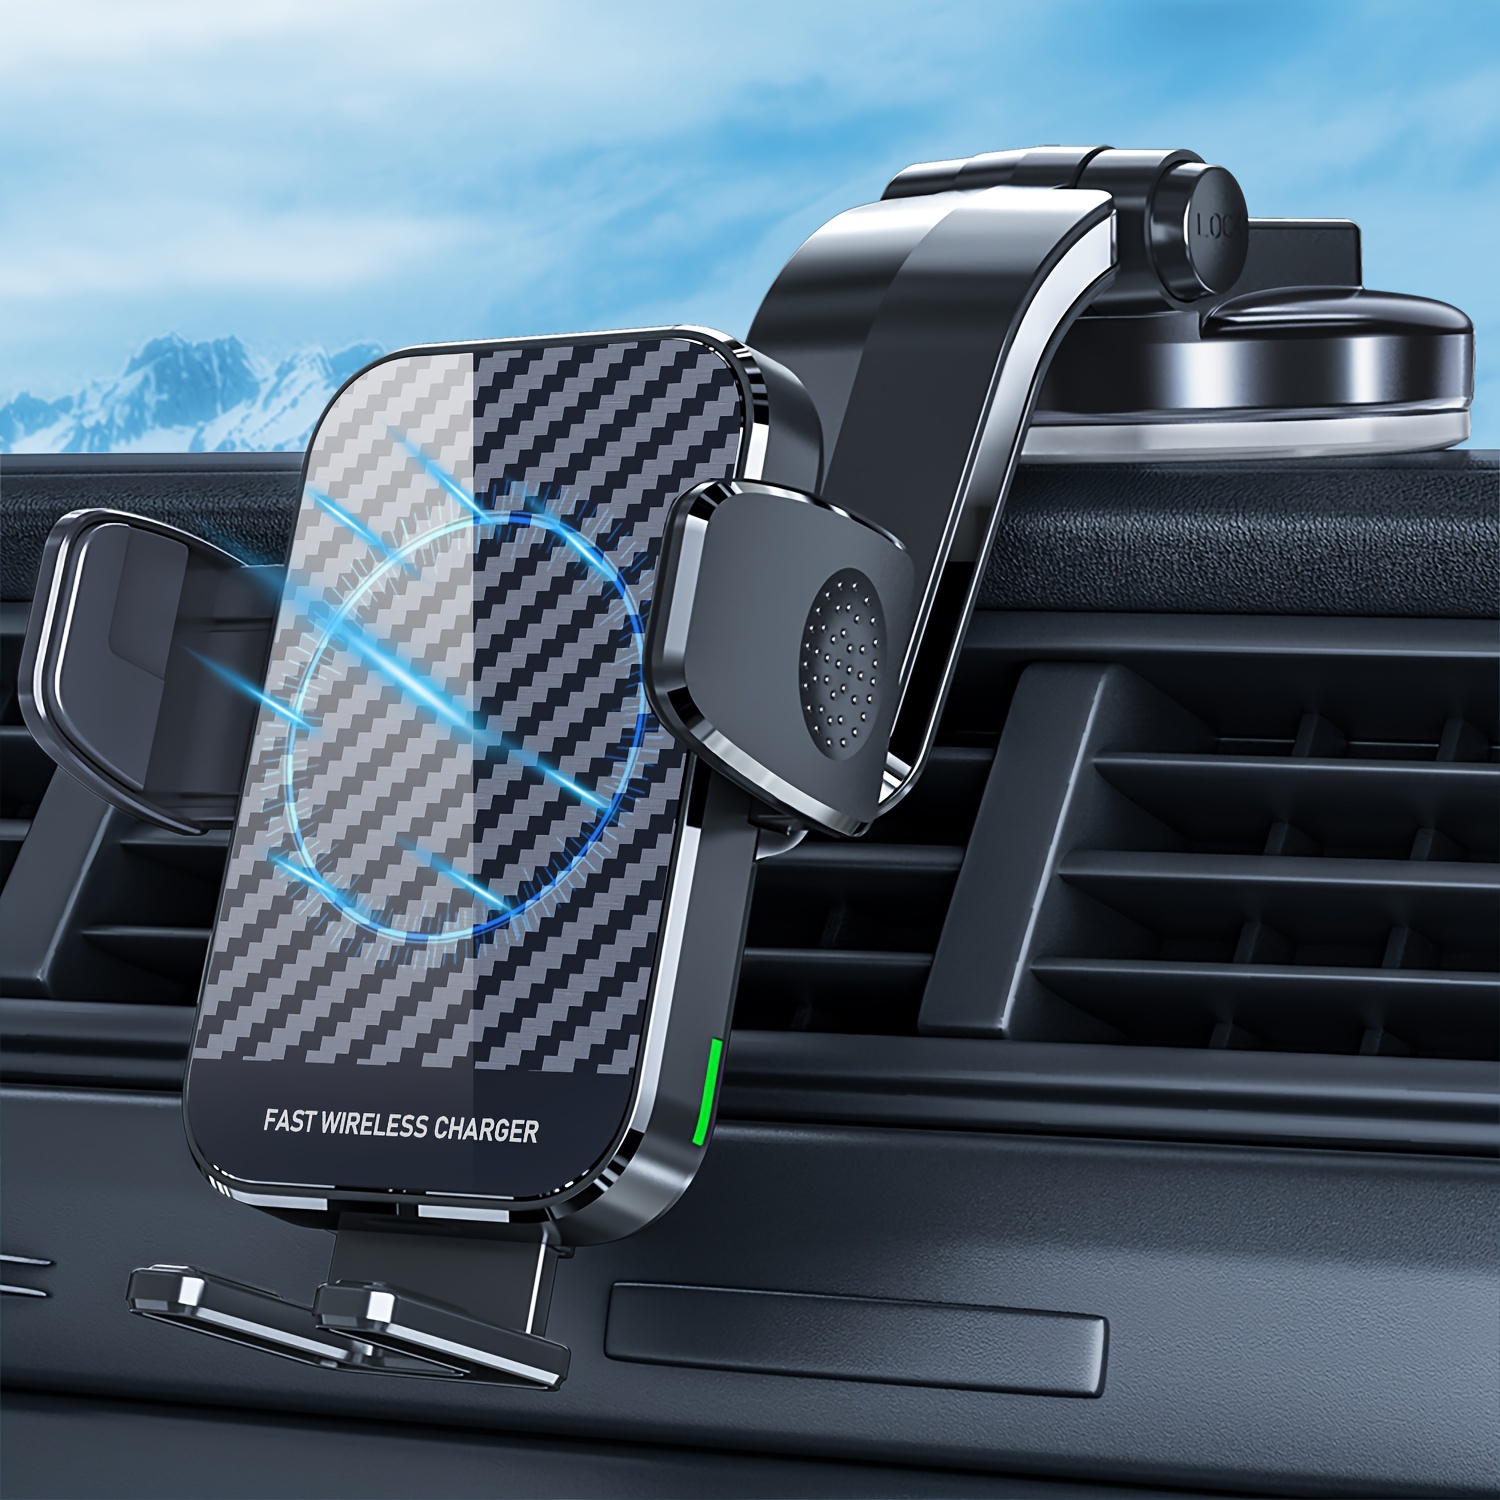 Kabelloses KfZ Handyladegerät Car Wireless Charger A18 neu in